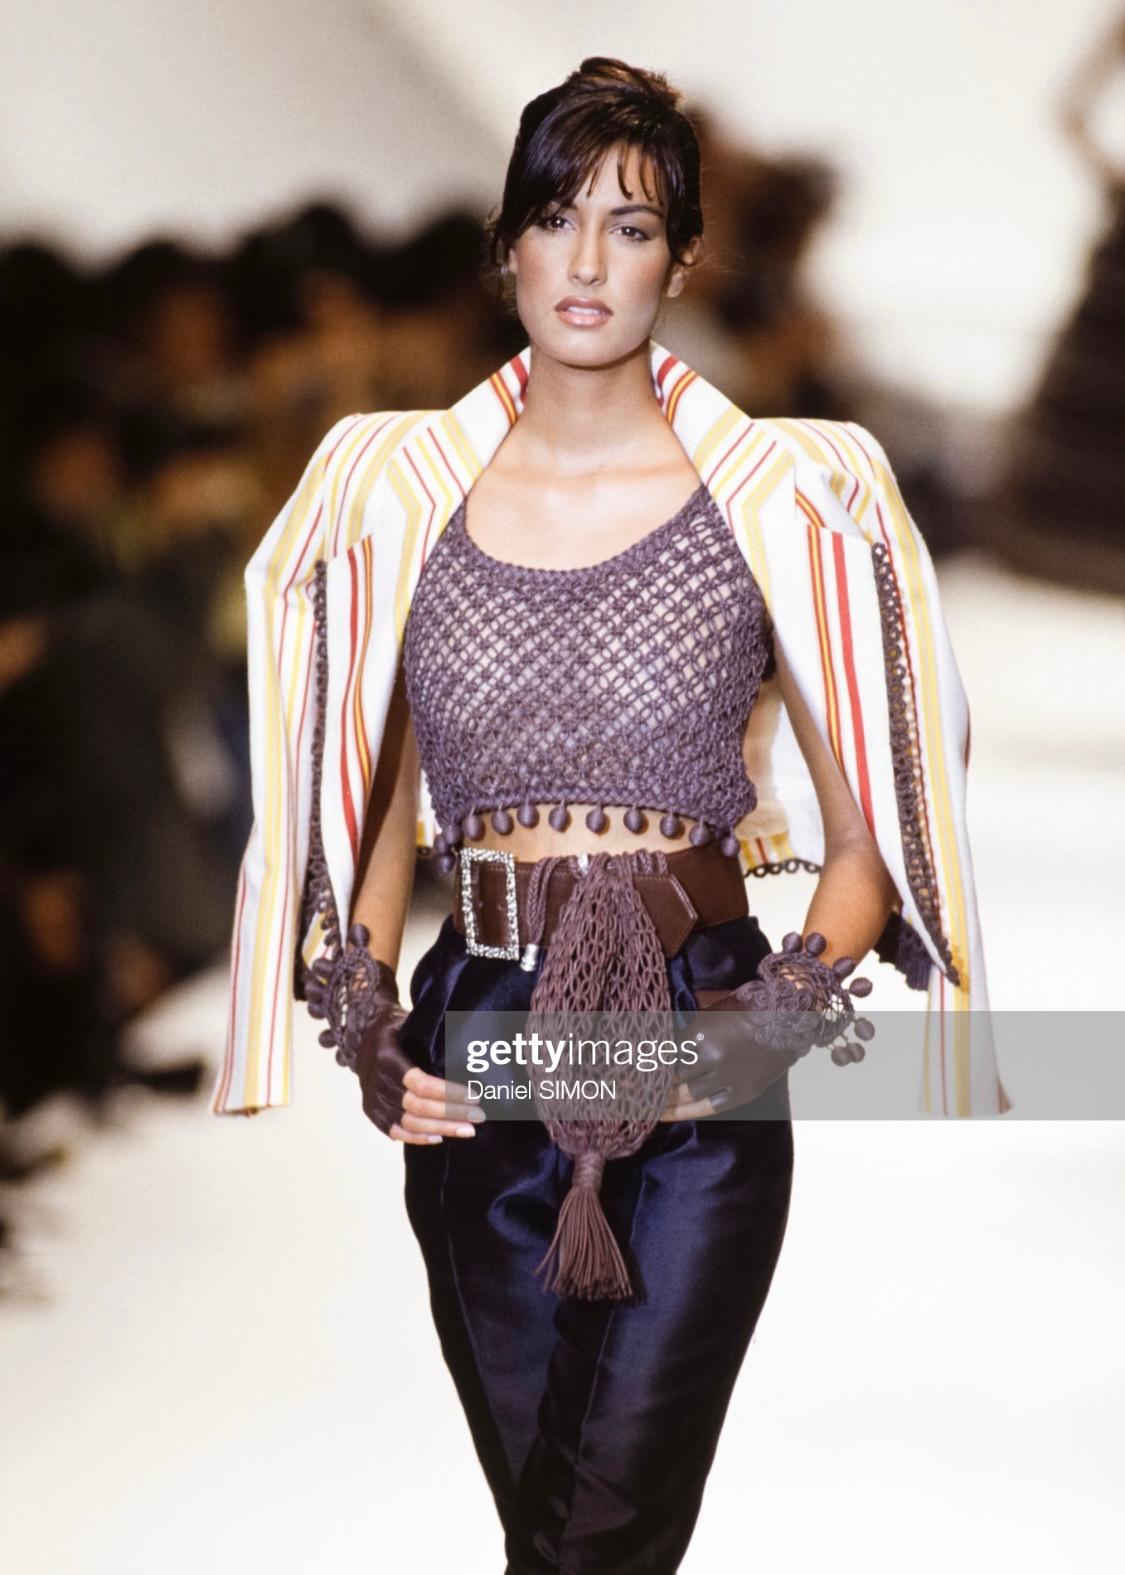 Collectional présente un tailleur jupe trois pièces demi-couture conçu par Gianfranco Ferré pour la collection printemps-été 1994 de Christian Dior. Cette pièce présente un tressage en corde cirée marron sur le devant du crop-top qui se prolonge sur